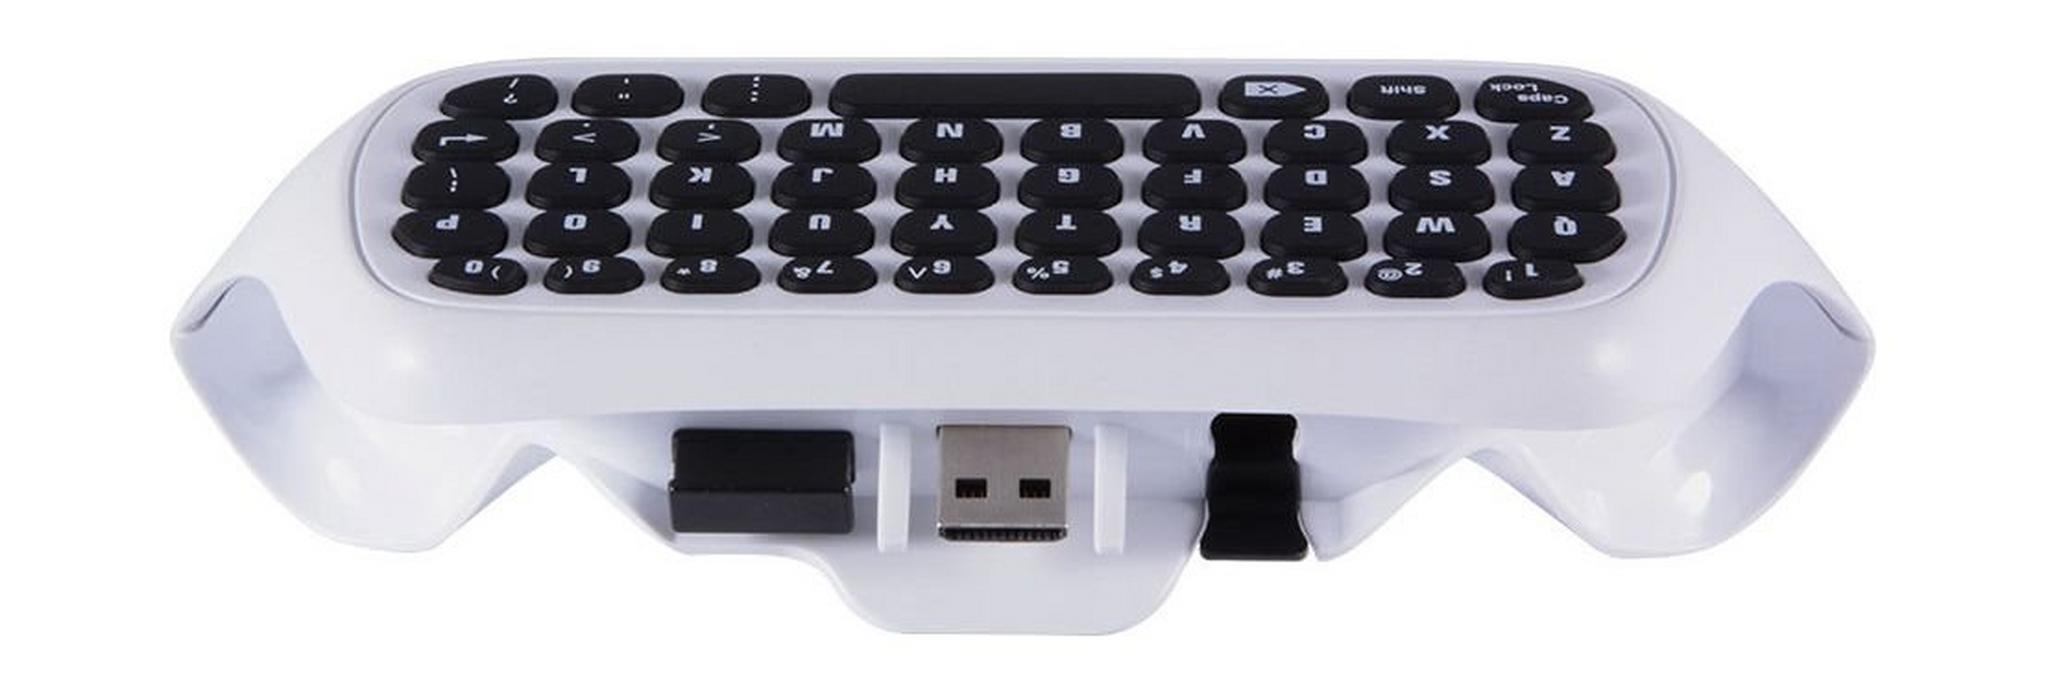 لوحة المفاتيح اللاسلكية الصغيرة المُلحقة بيد التحكم لأكس بوكس ون - أبيض